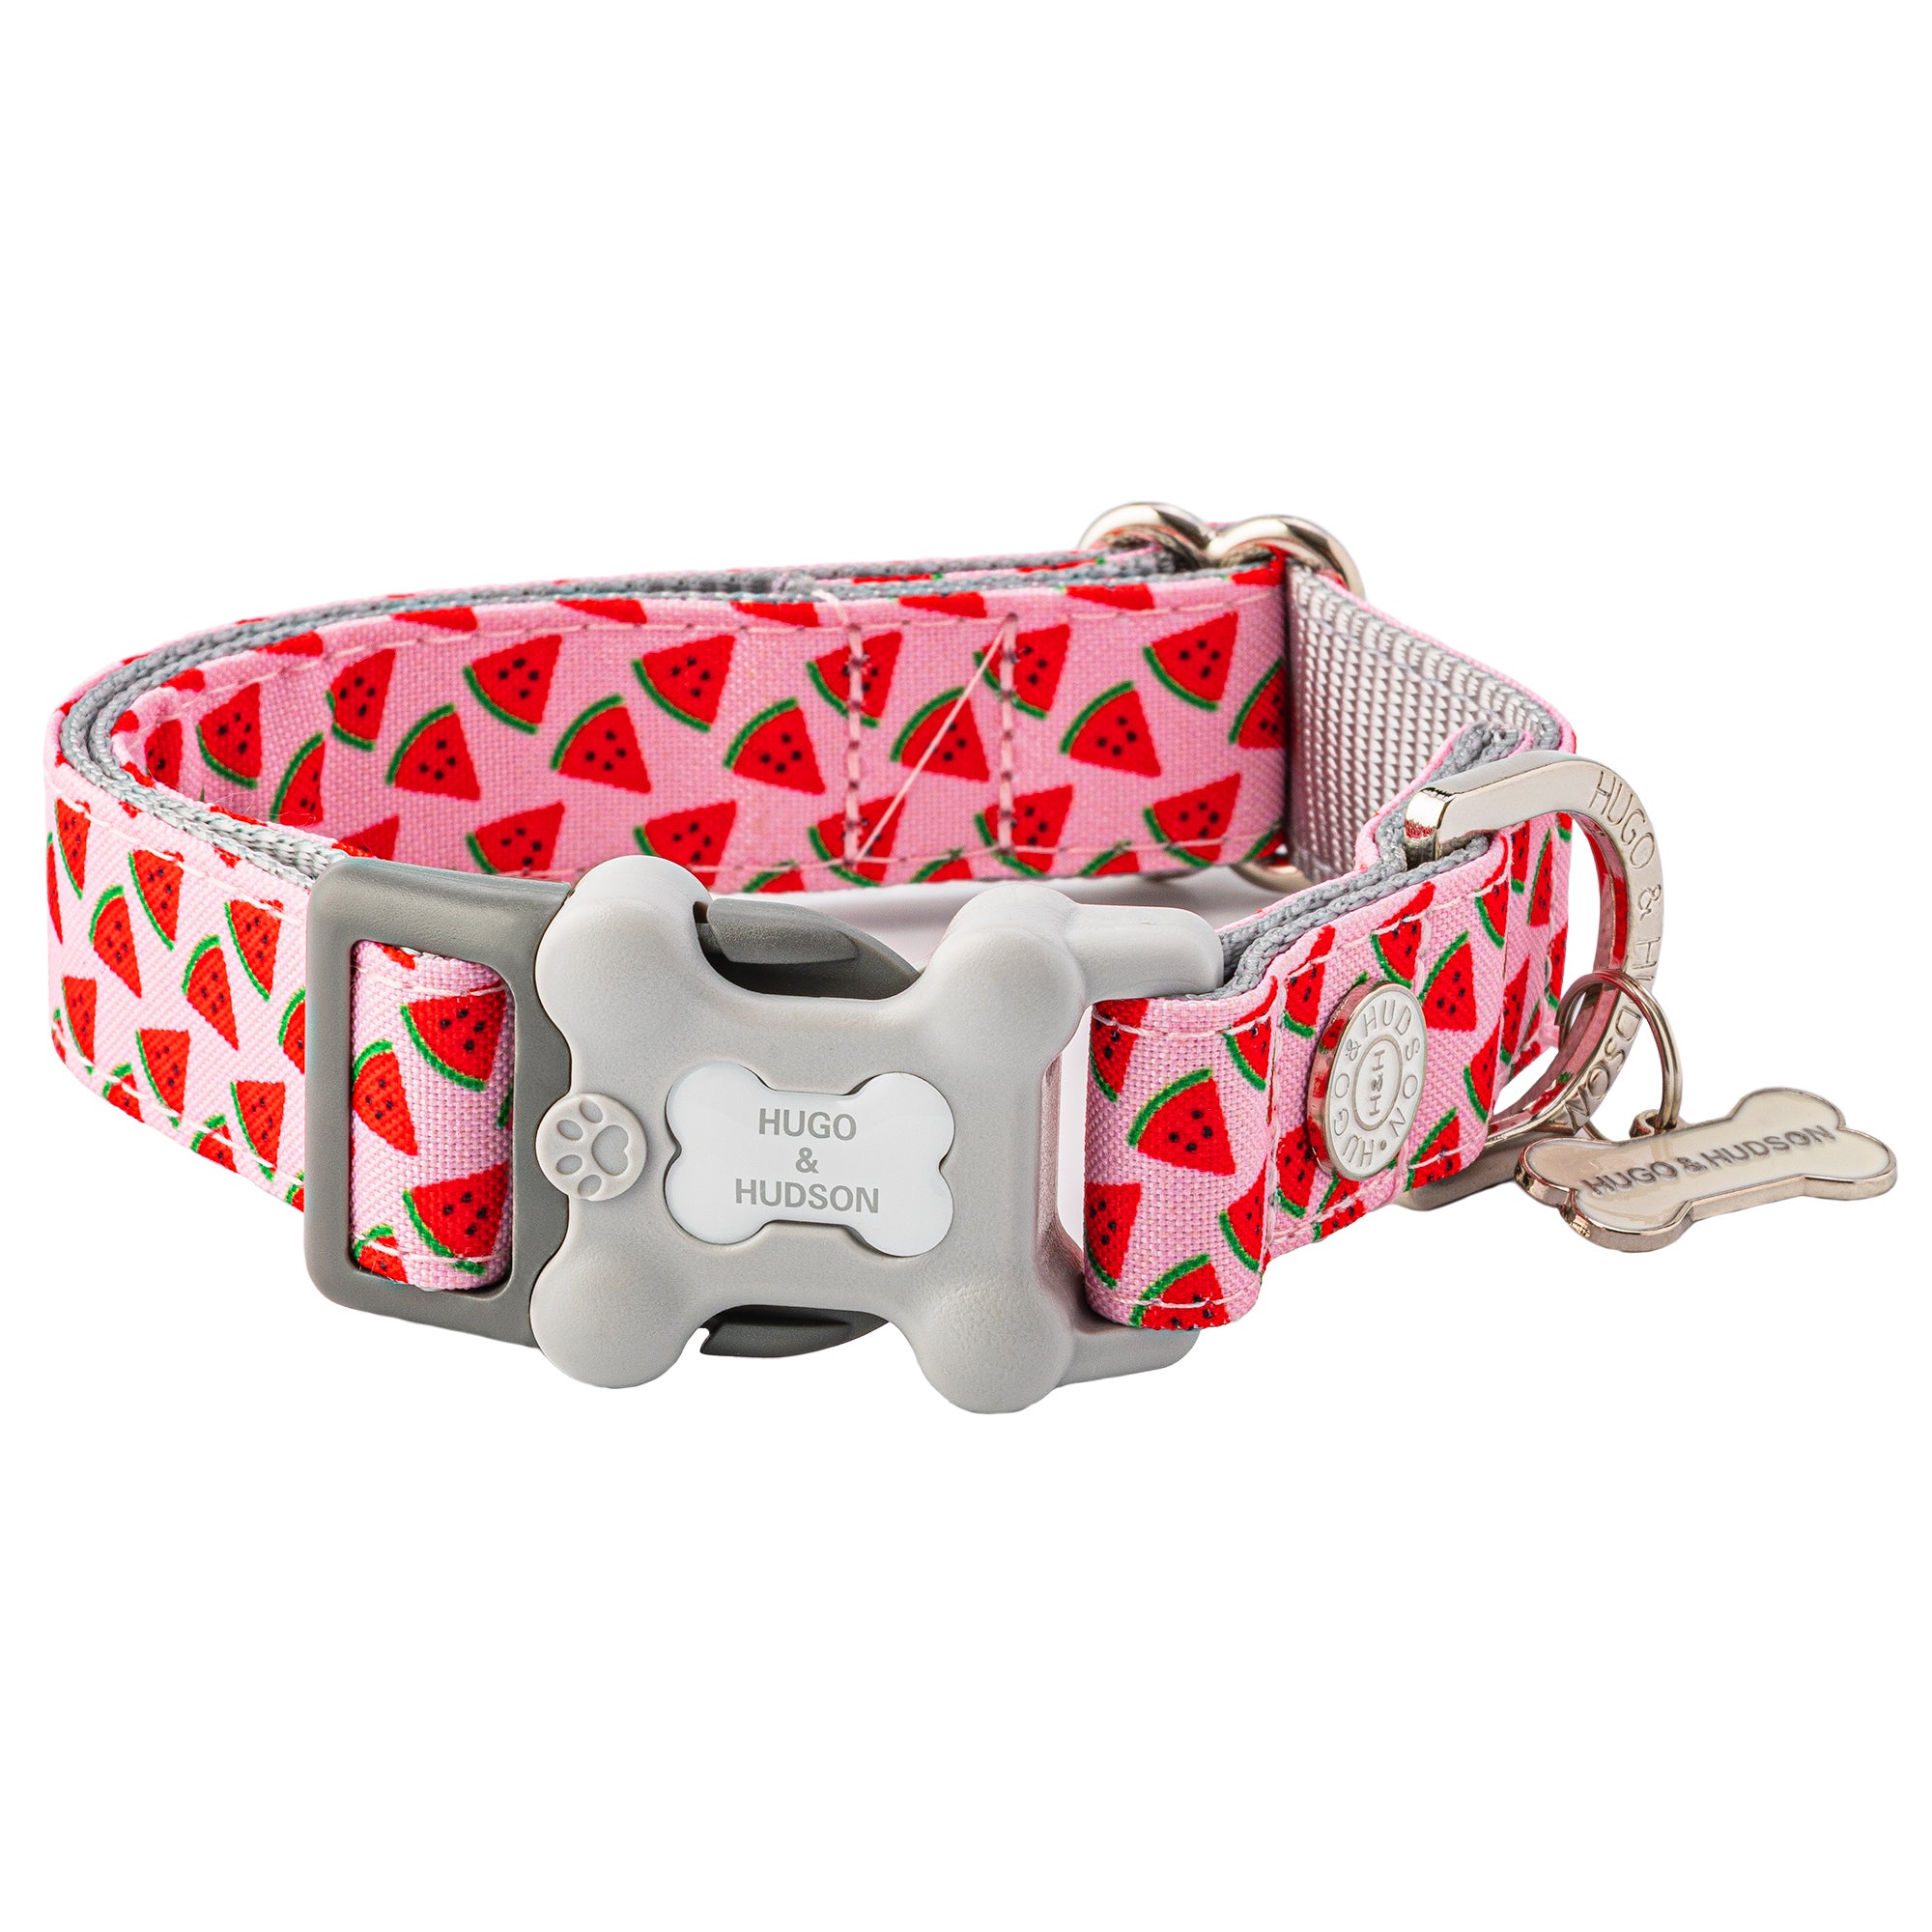 Hugo & Hudson Watermelon Bone Buckle Dog Collar Pink